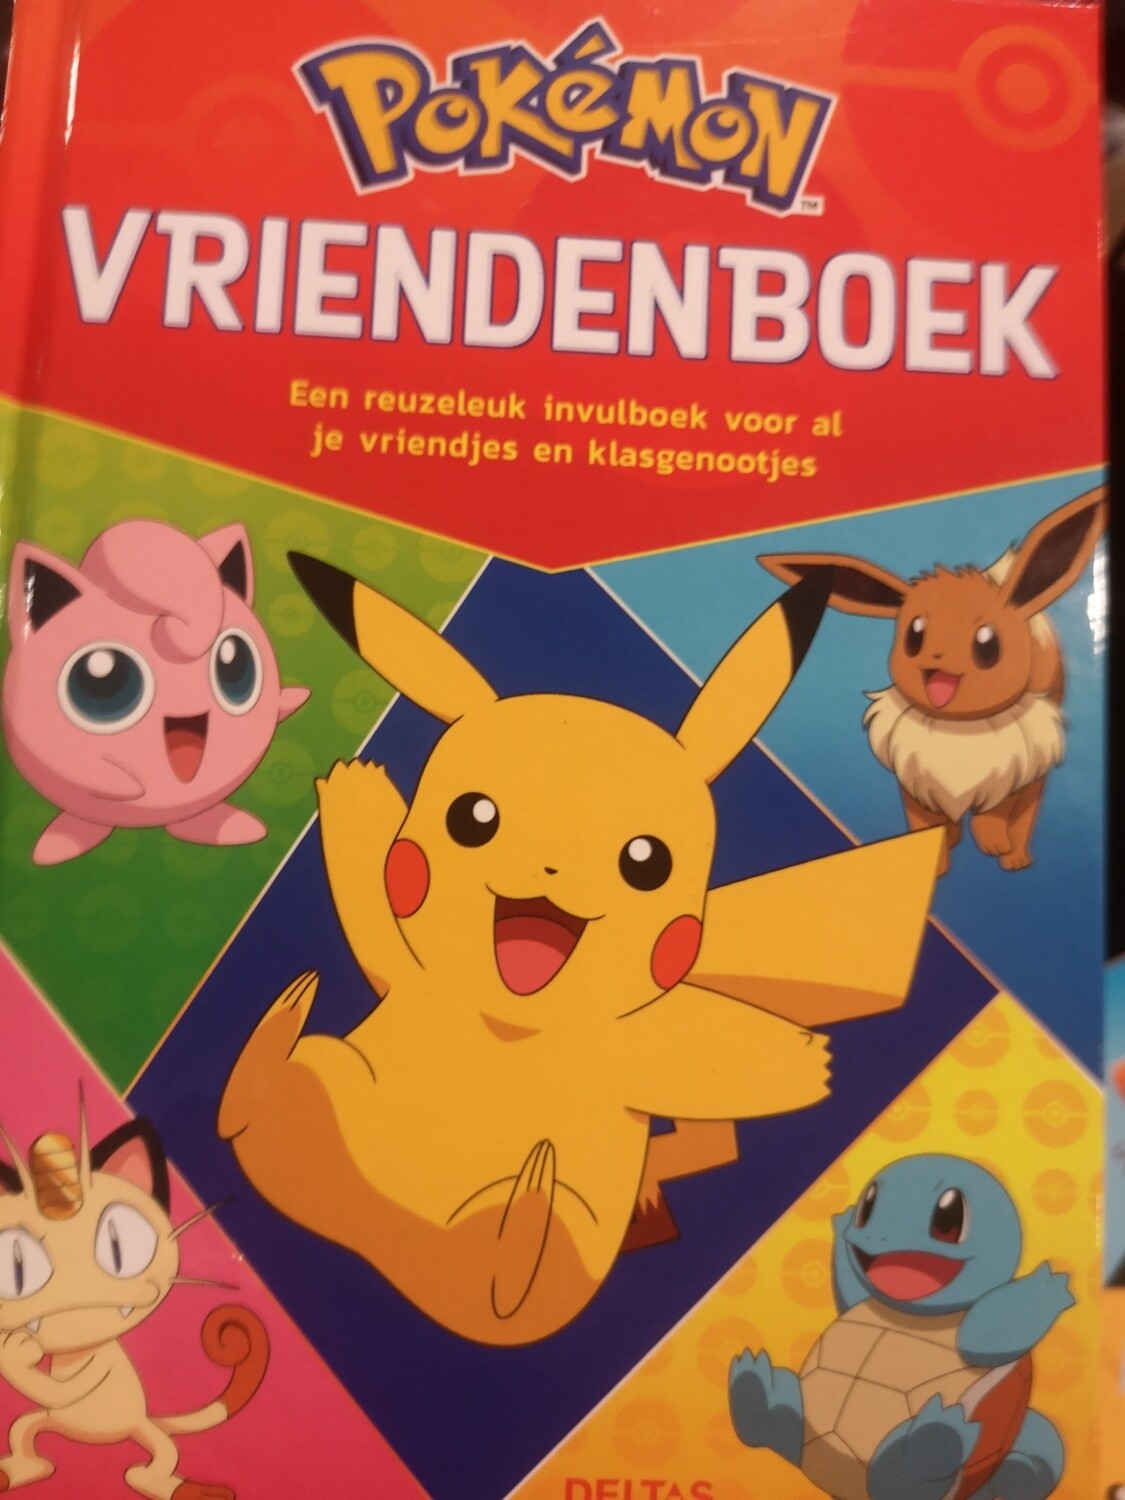 Vriendenboek, Pokémon, Deltas